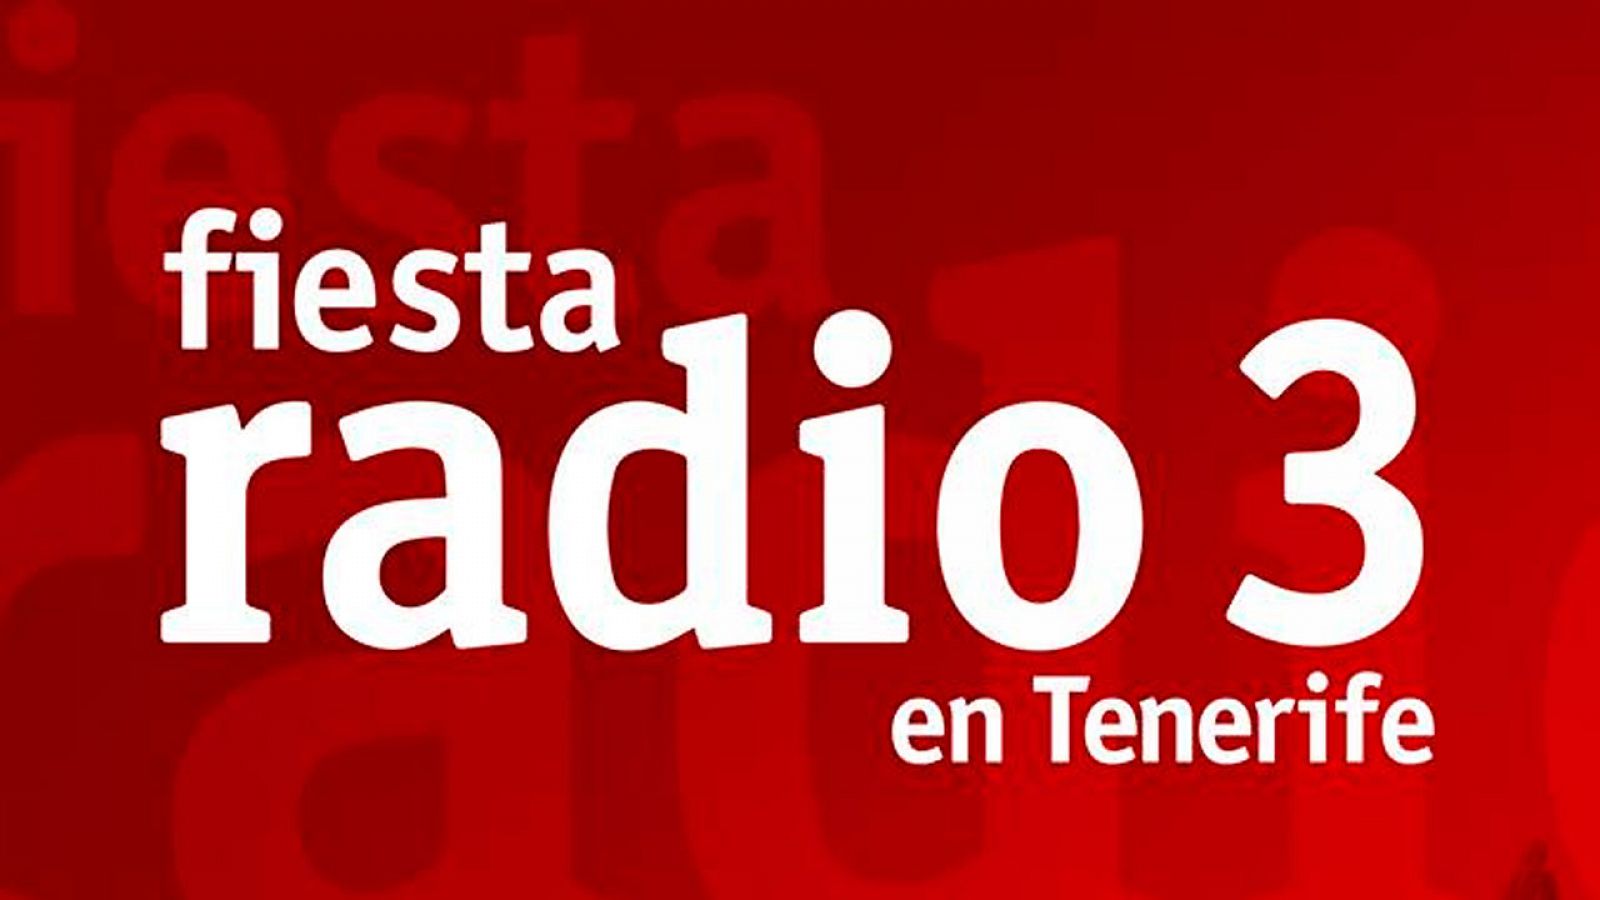 Fiesta de Radio 3 en Tenerife